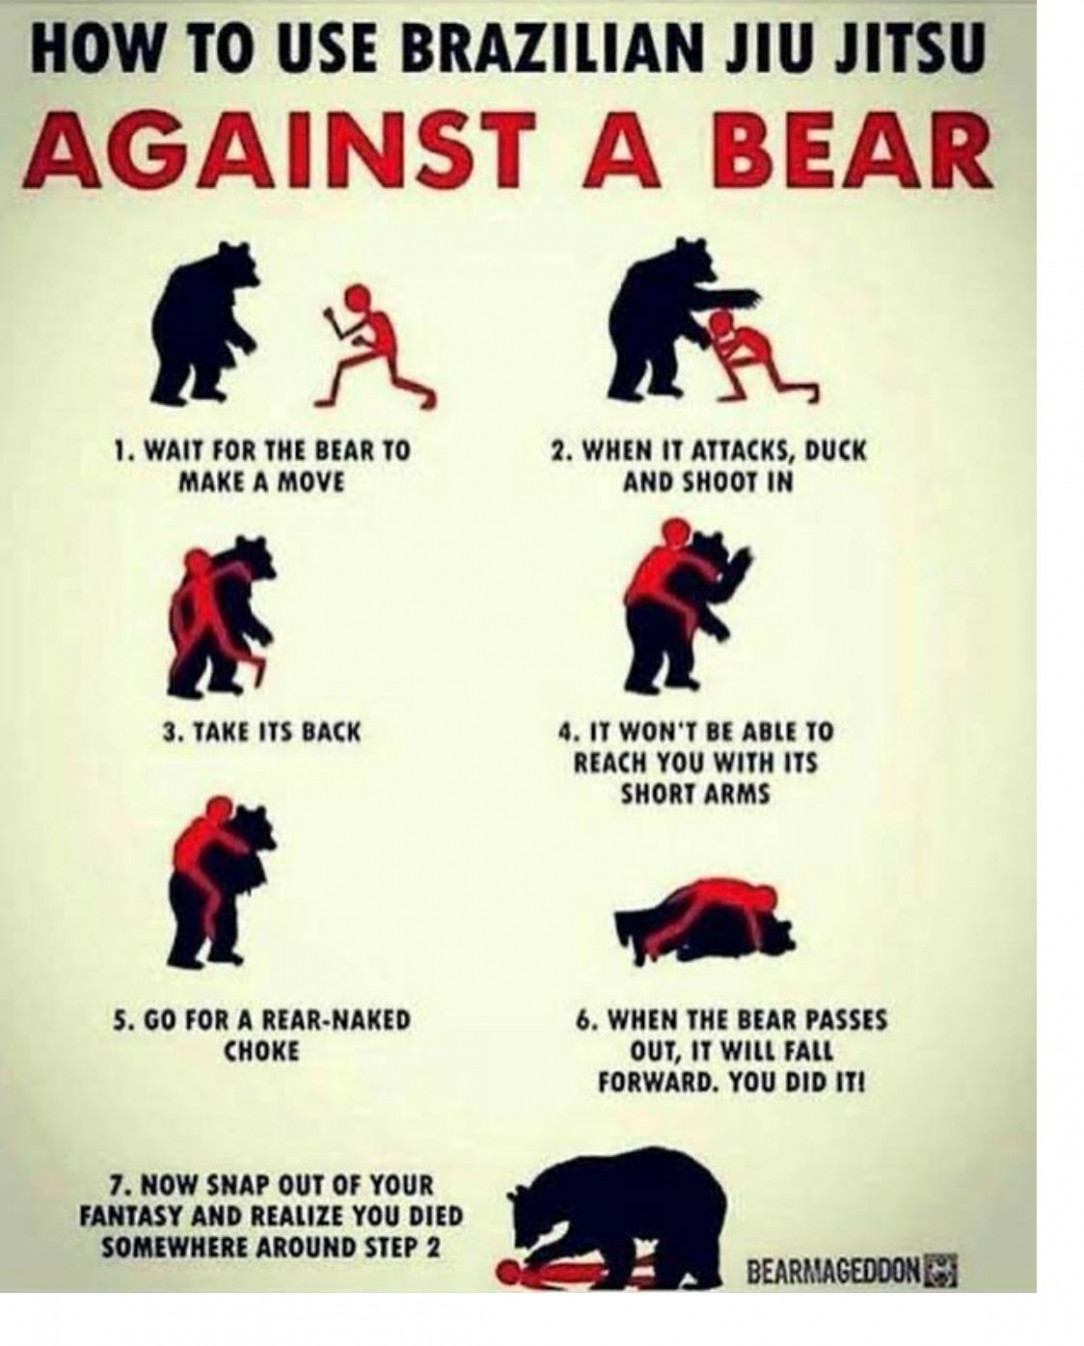 Bear. Beats. Brazilian jiu jitsu